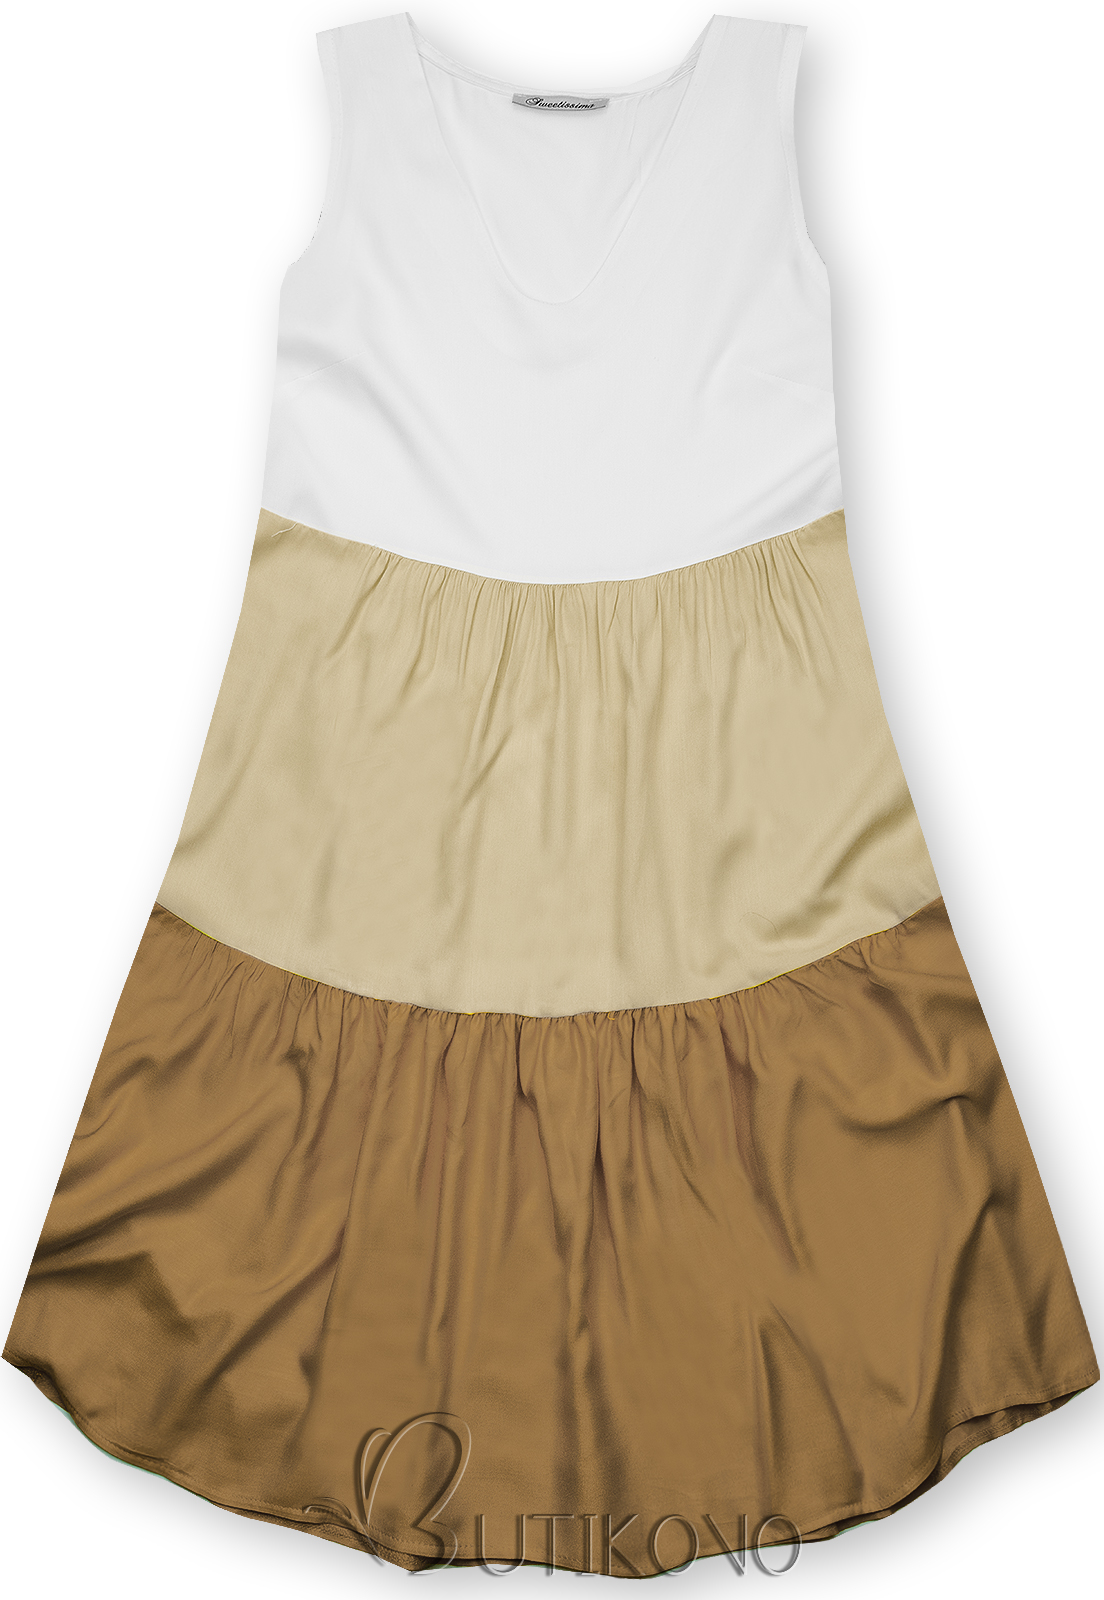 Letné šaty z viskózy biela/béžová/hnedá